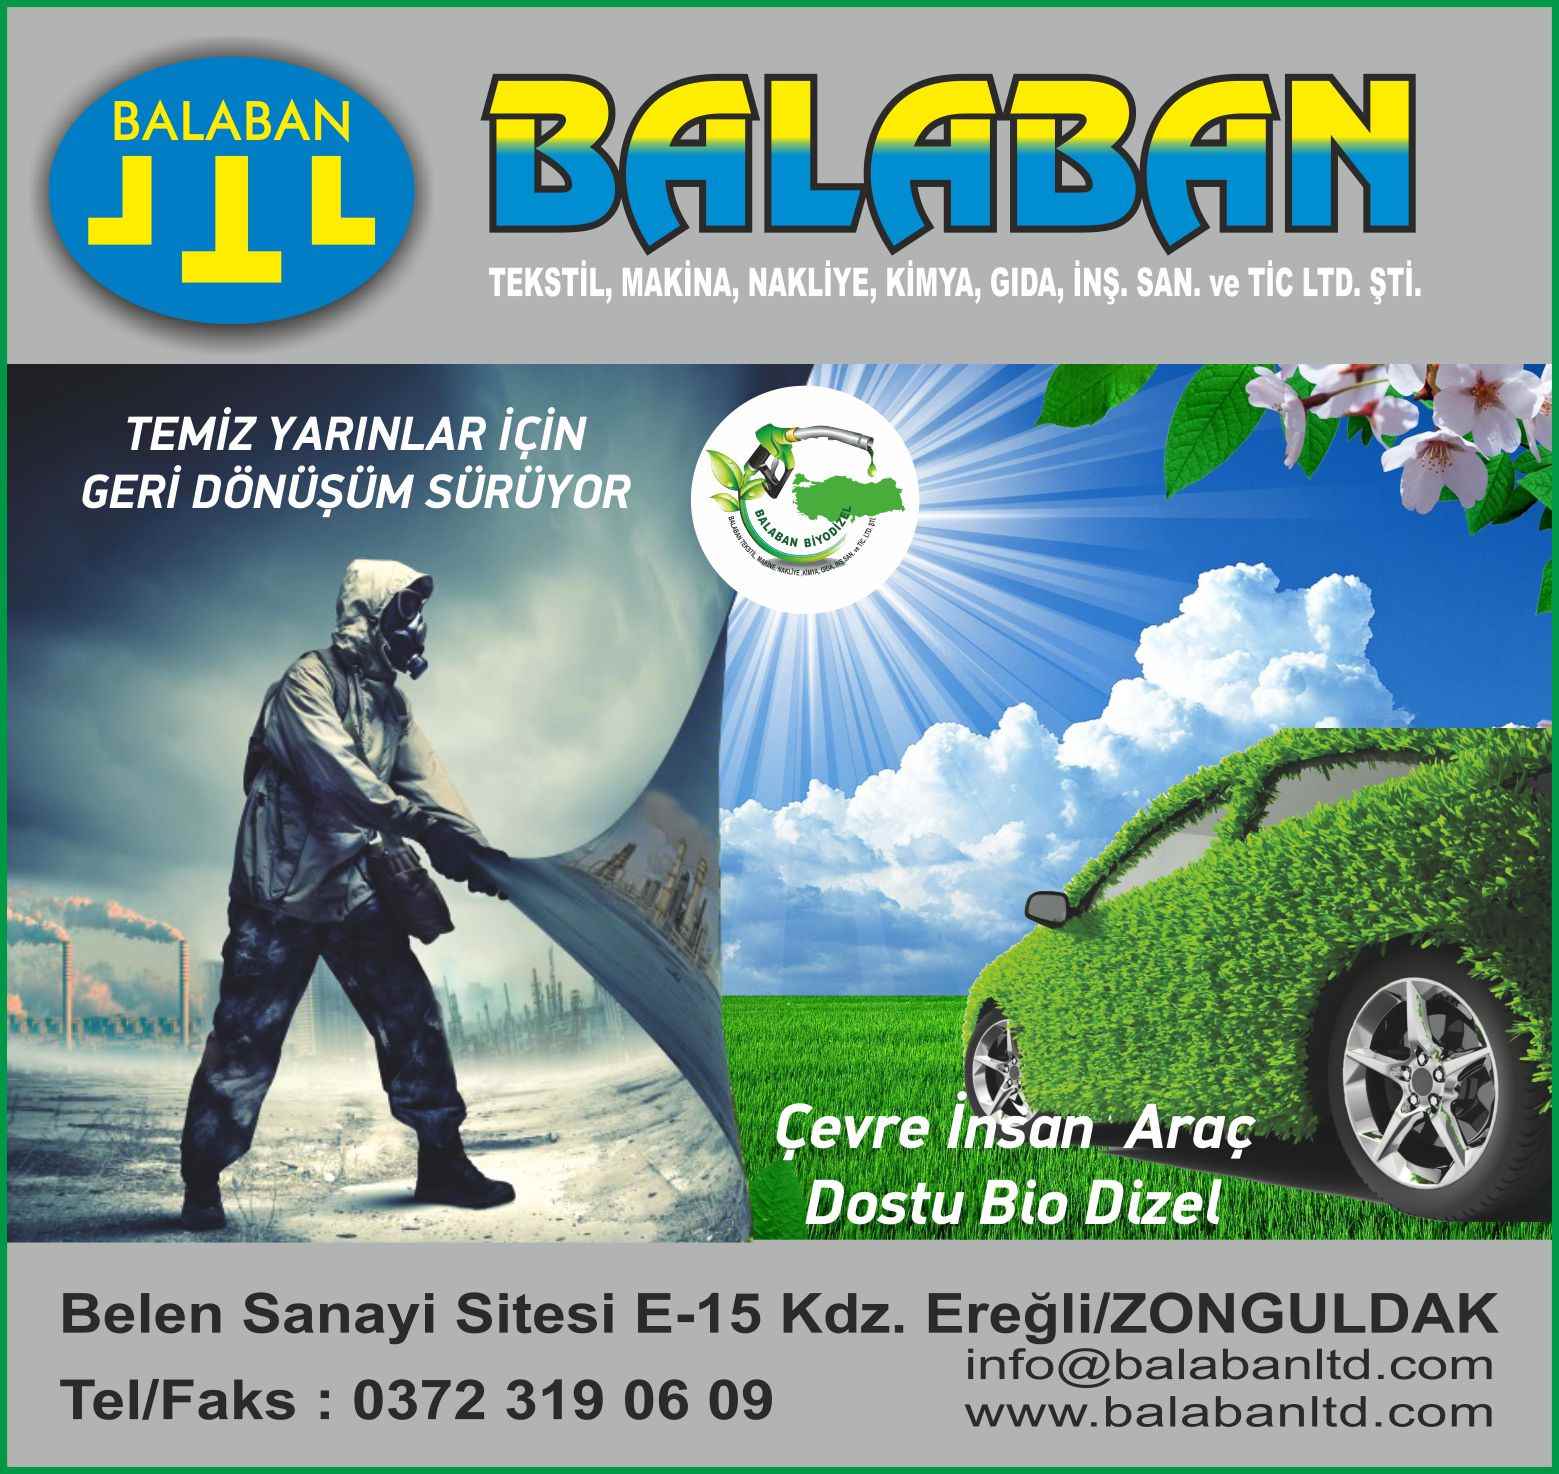 Balaban Bio Dizel Kdz. Ereğli 